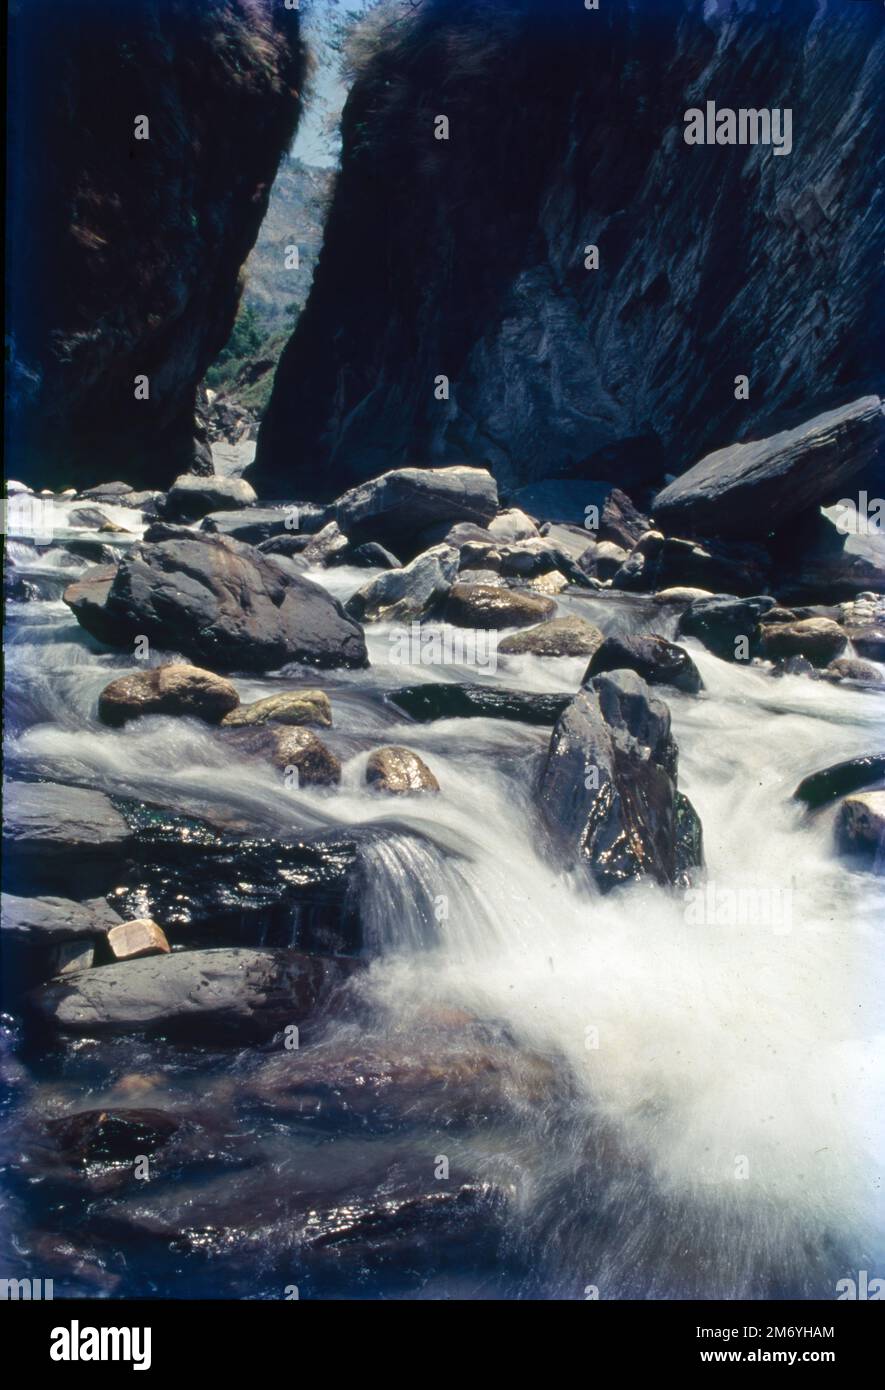 Il fiume Sarayu ha origine in Himalaya e scorre dallo stato di Utttar Pradesh e Uttarakhand. Il Sarayu è un fiume che ha origine in una cresta a sud della montagna di Nanda Kot nel distretto di Bageshwar in Uttarakhand, India. Foto Stock